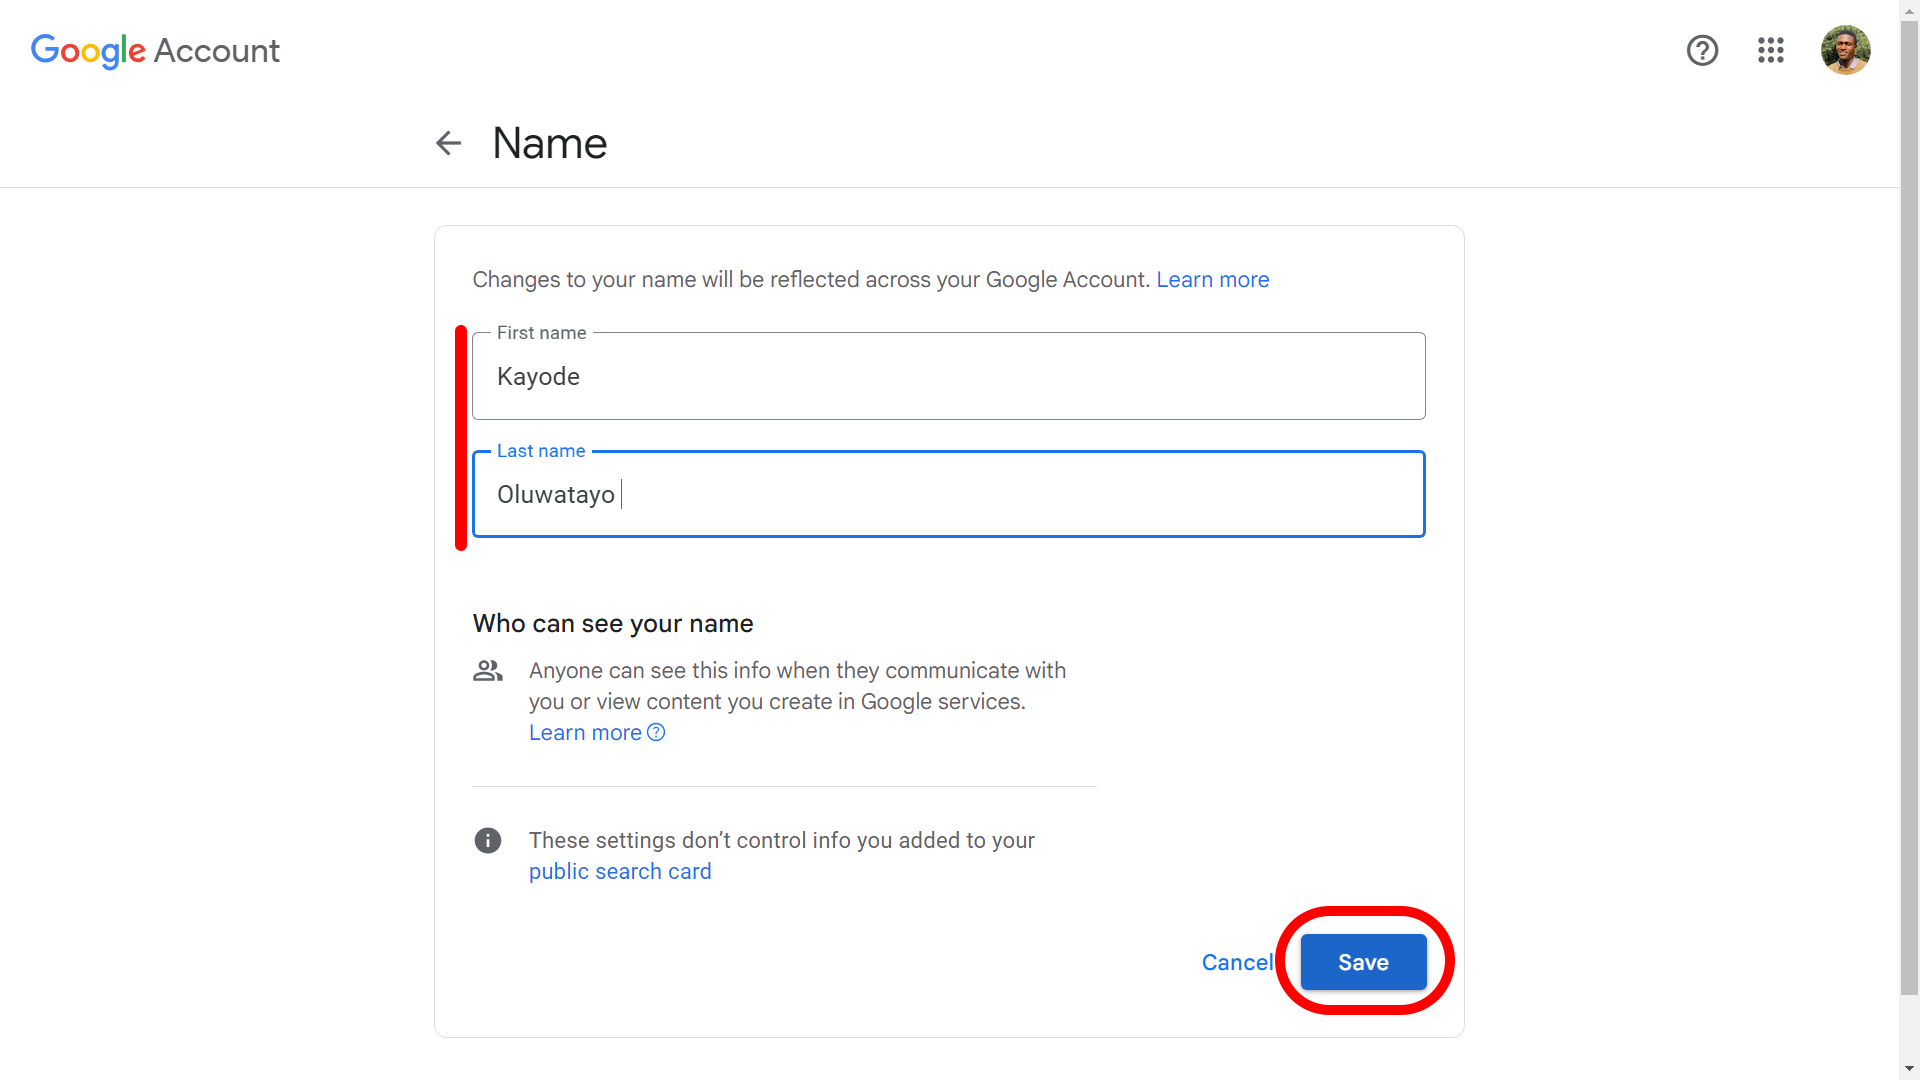 Modifying and saving new Google account name